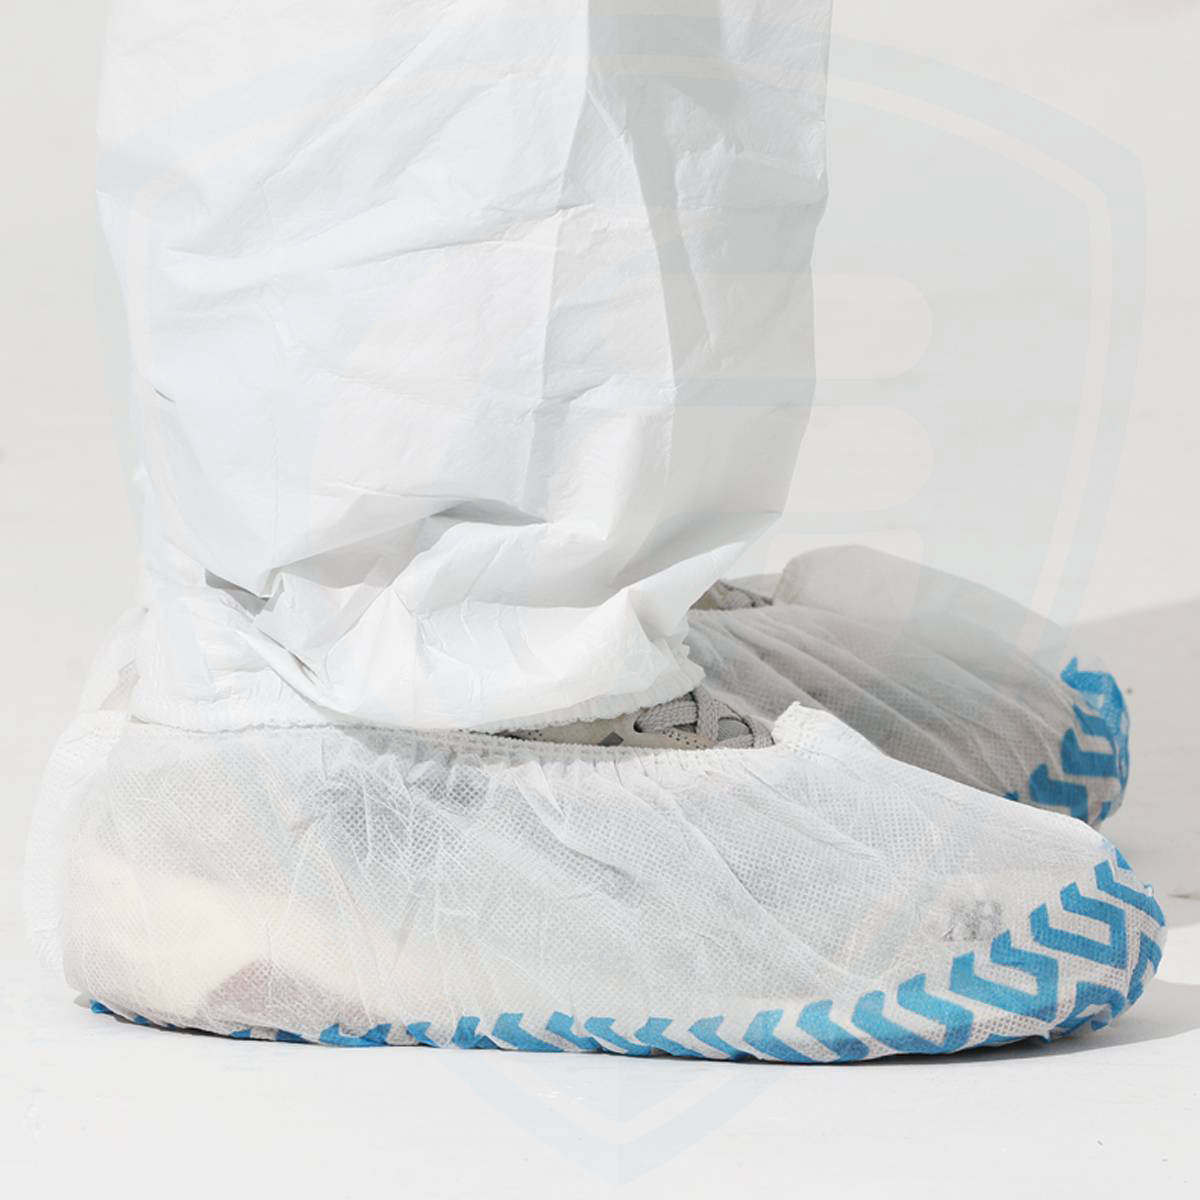 Couvre-chaussures non tissés jetables pour l'intérieur Respirant Antidérapant Durable